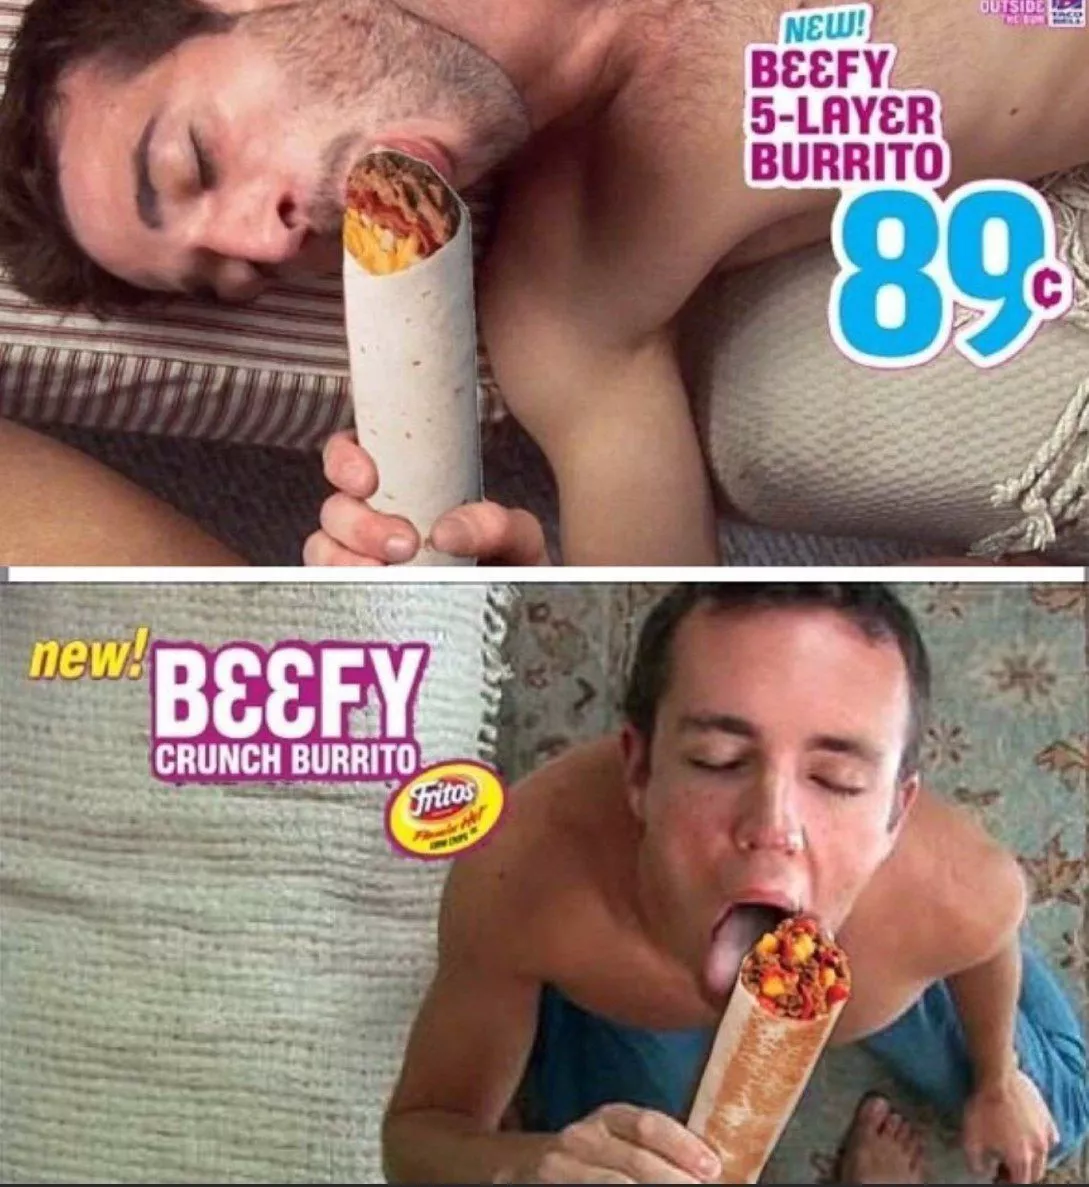 Burrito porn